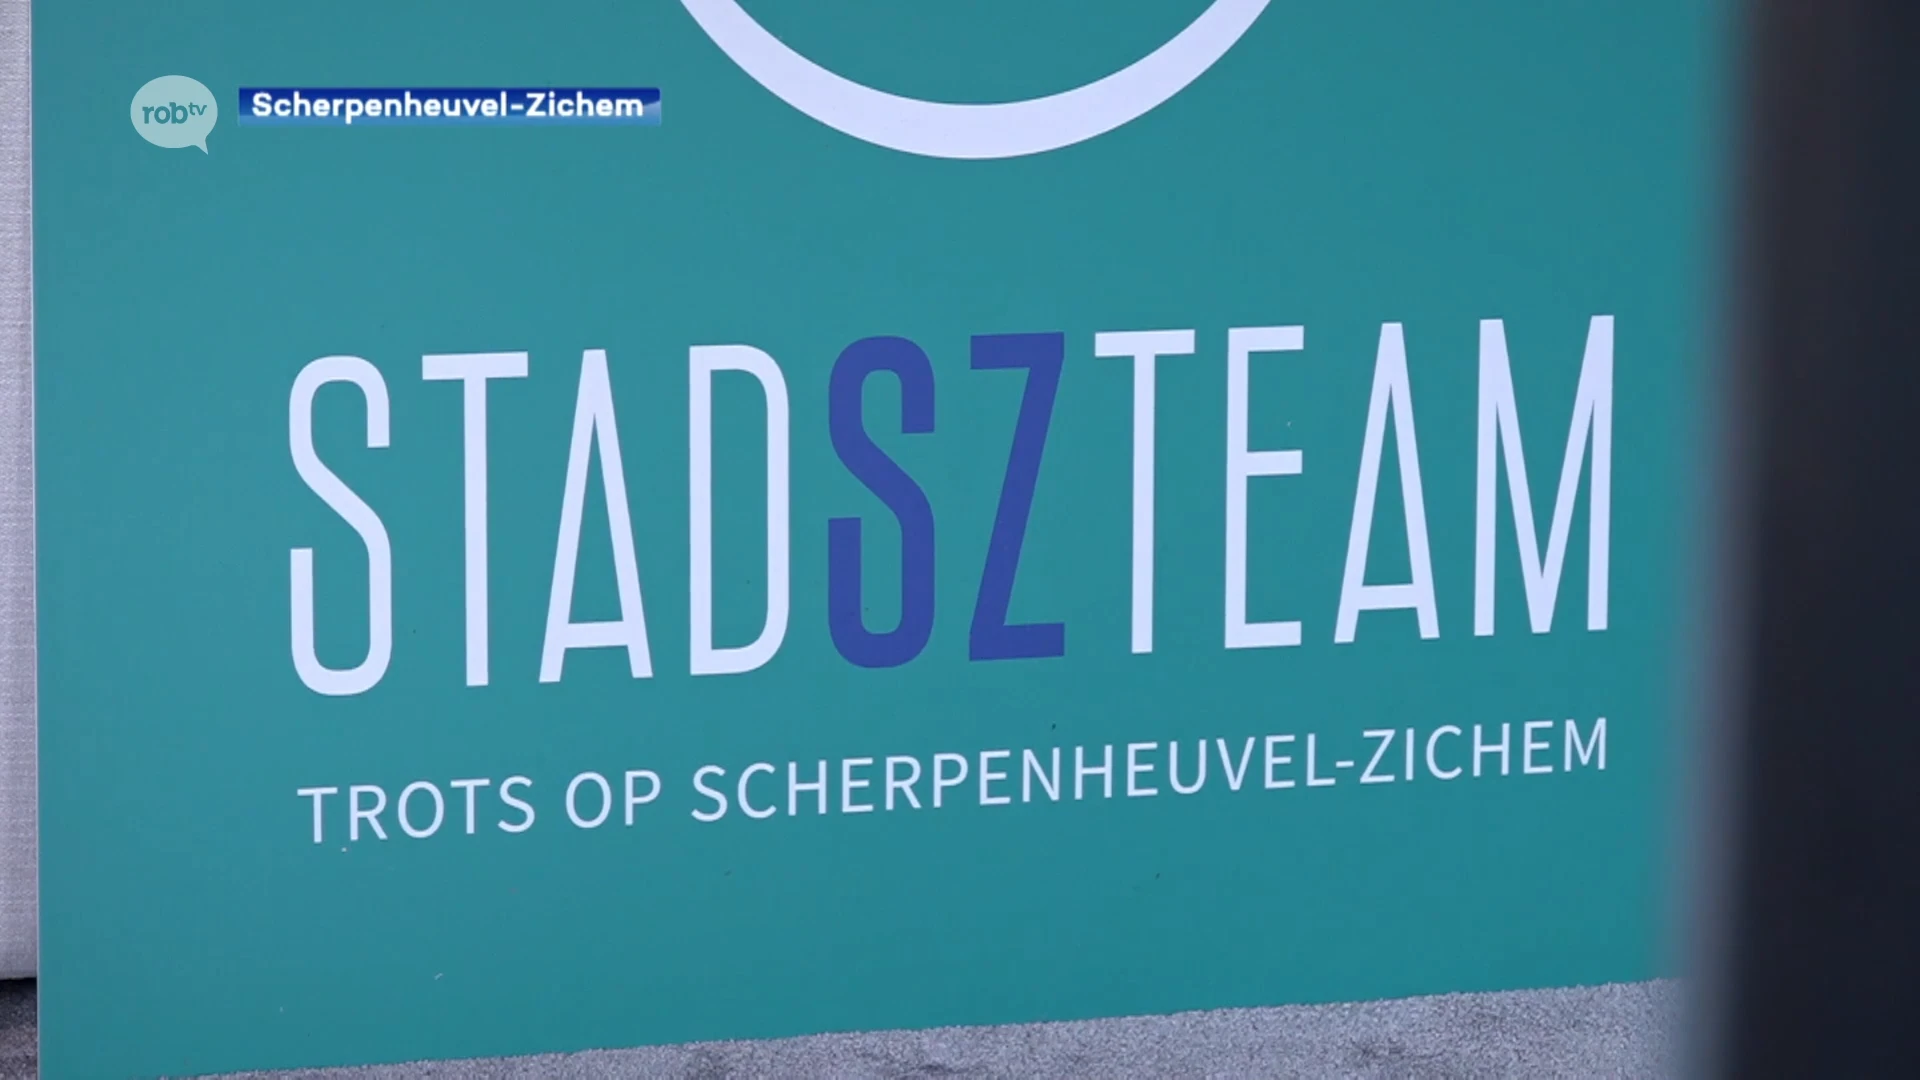 Scherpenheuvel-Zichem heeft er met stadSZteam nieuwe partij bij, lijsttrekker Pieter Boudry: "Tijd voor verandering"